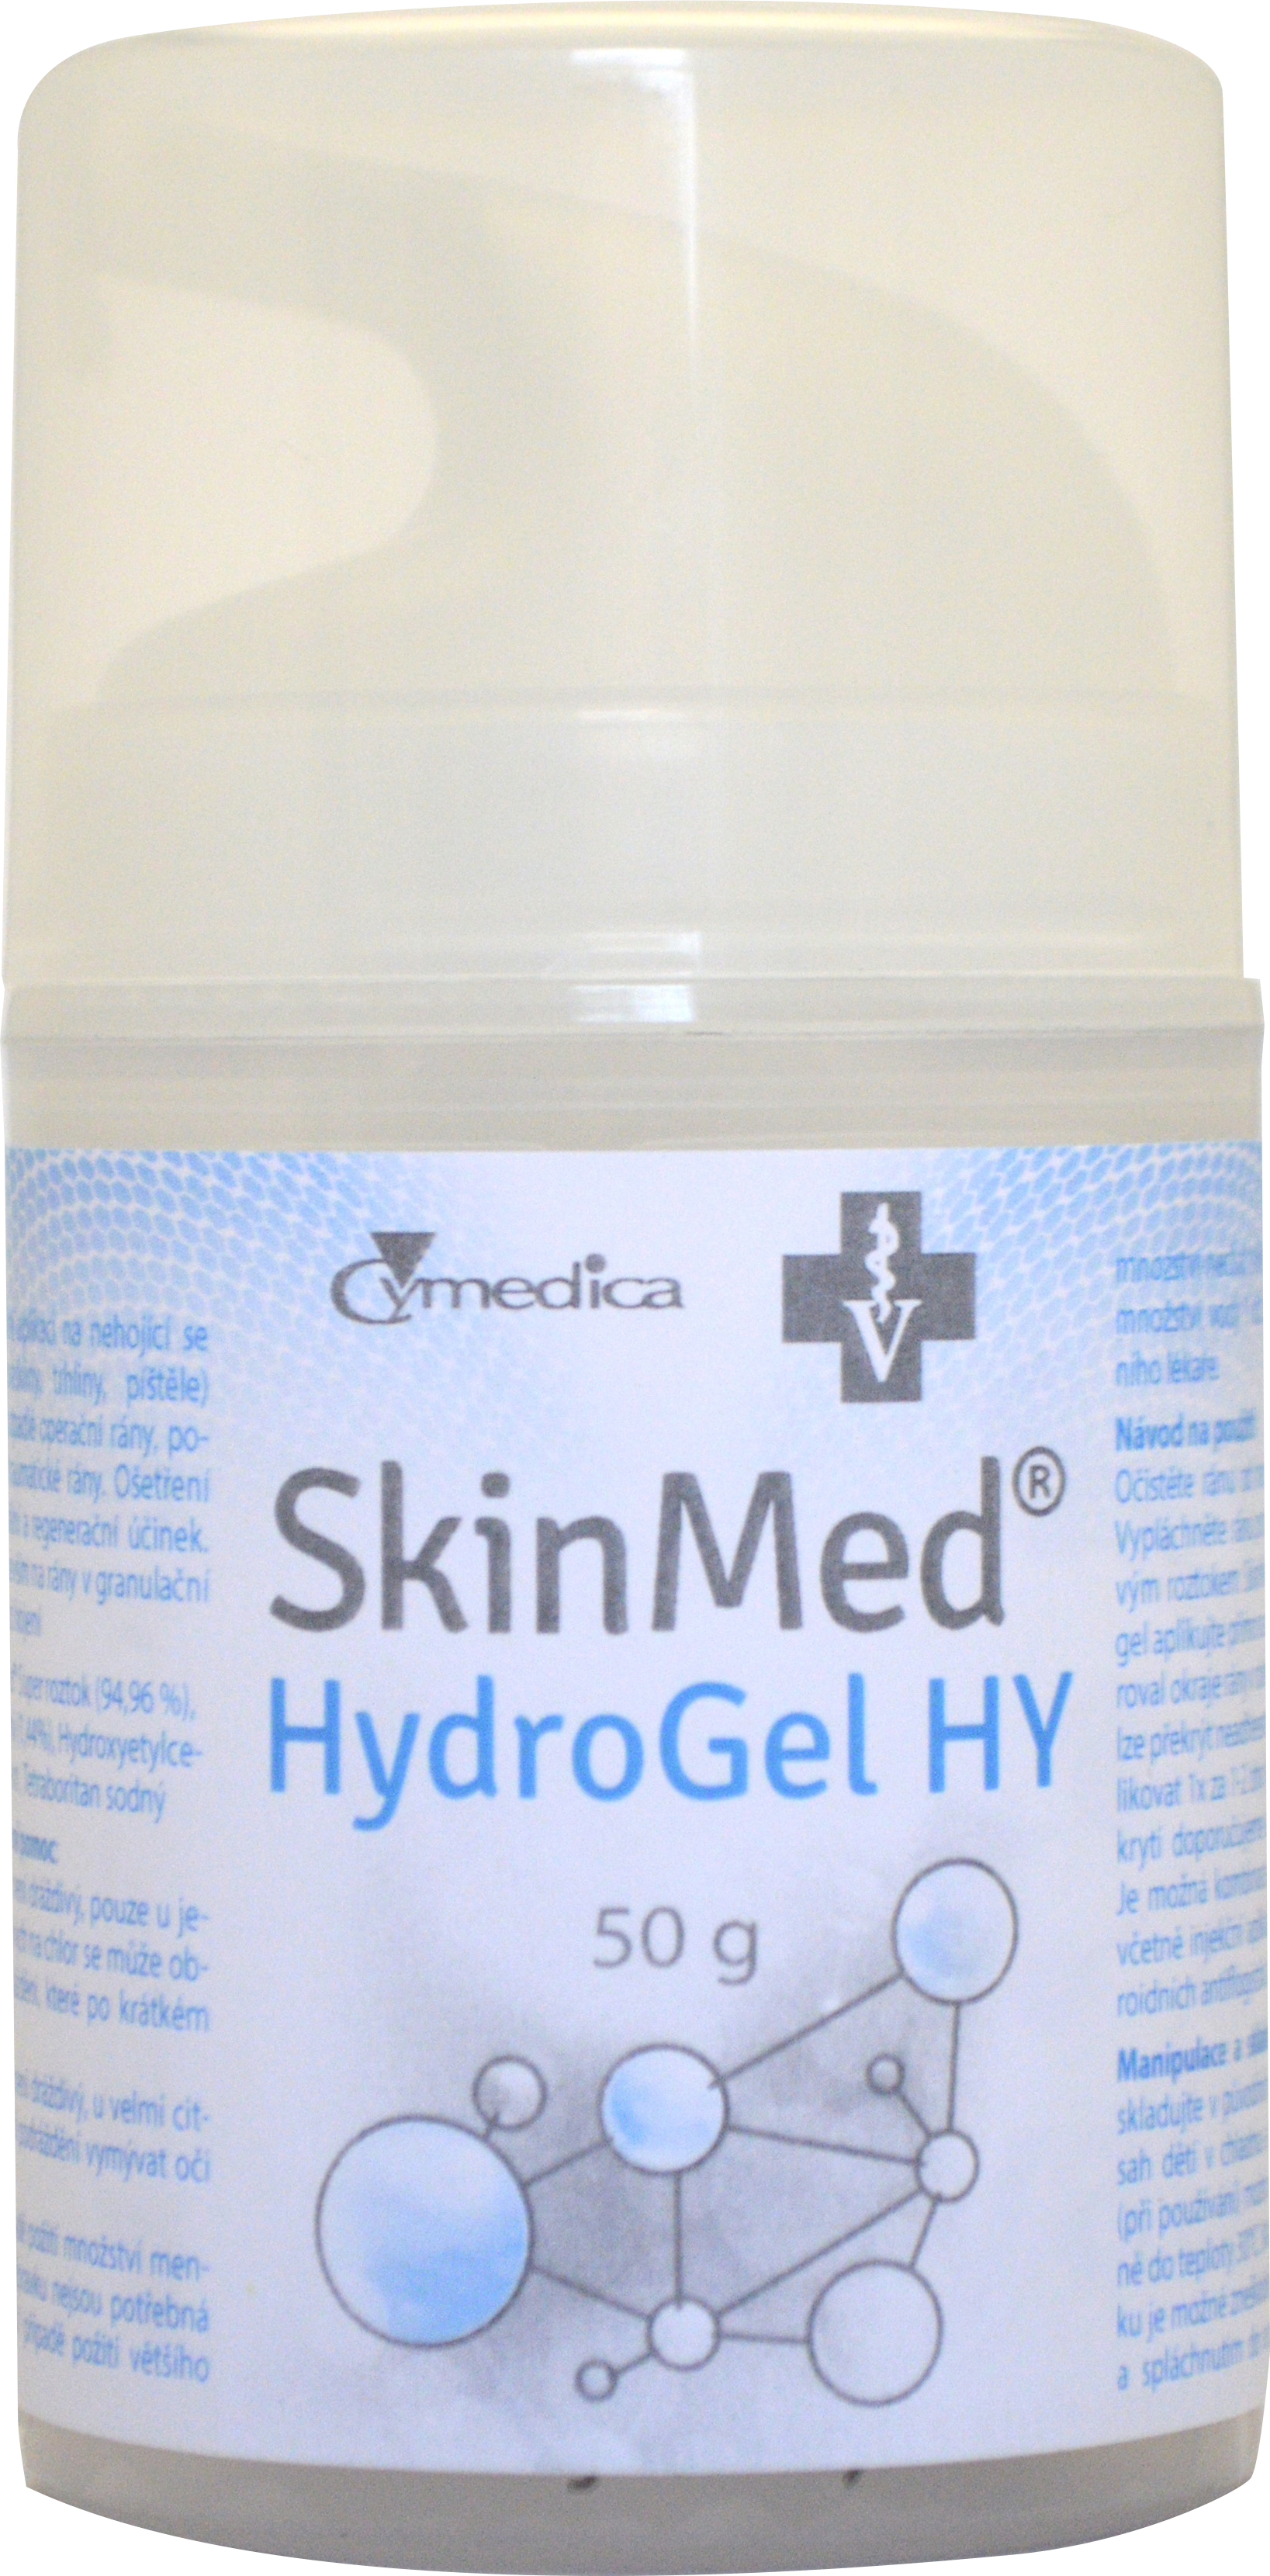 SkinMed HydroGel HY 50 g